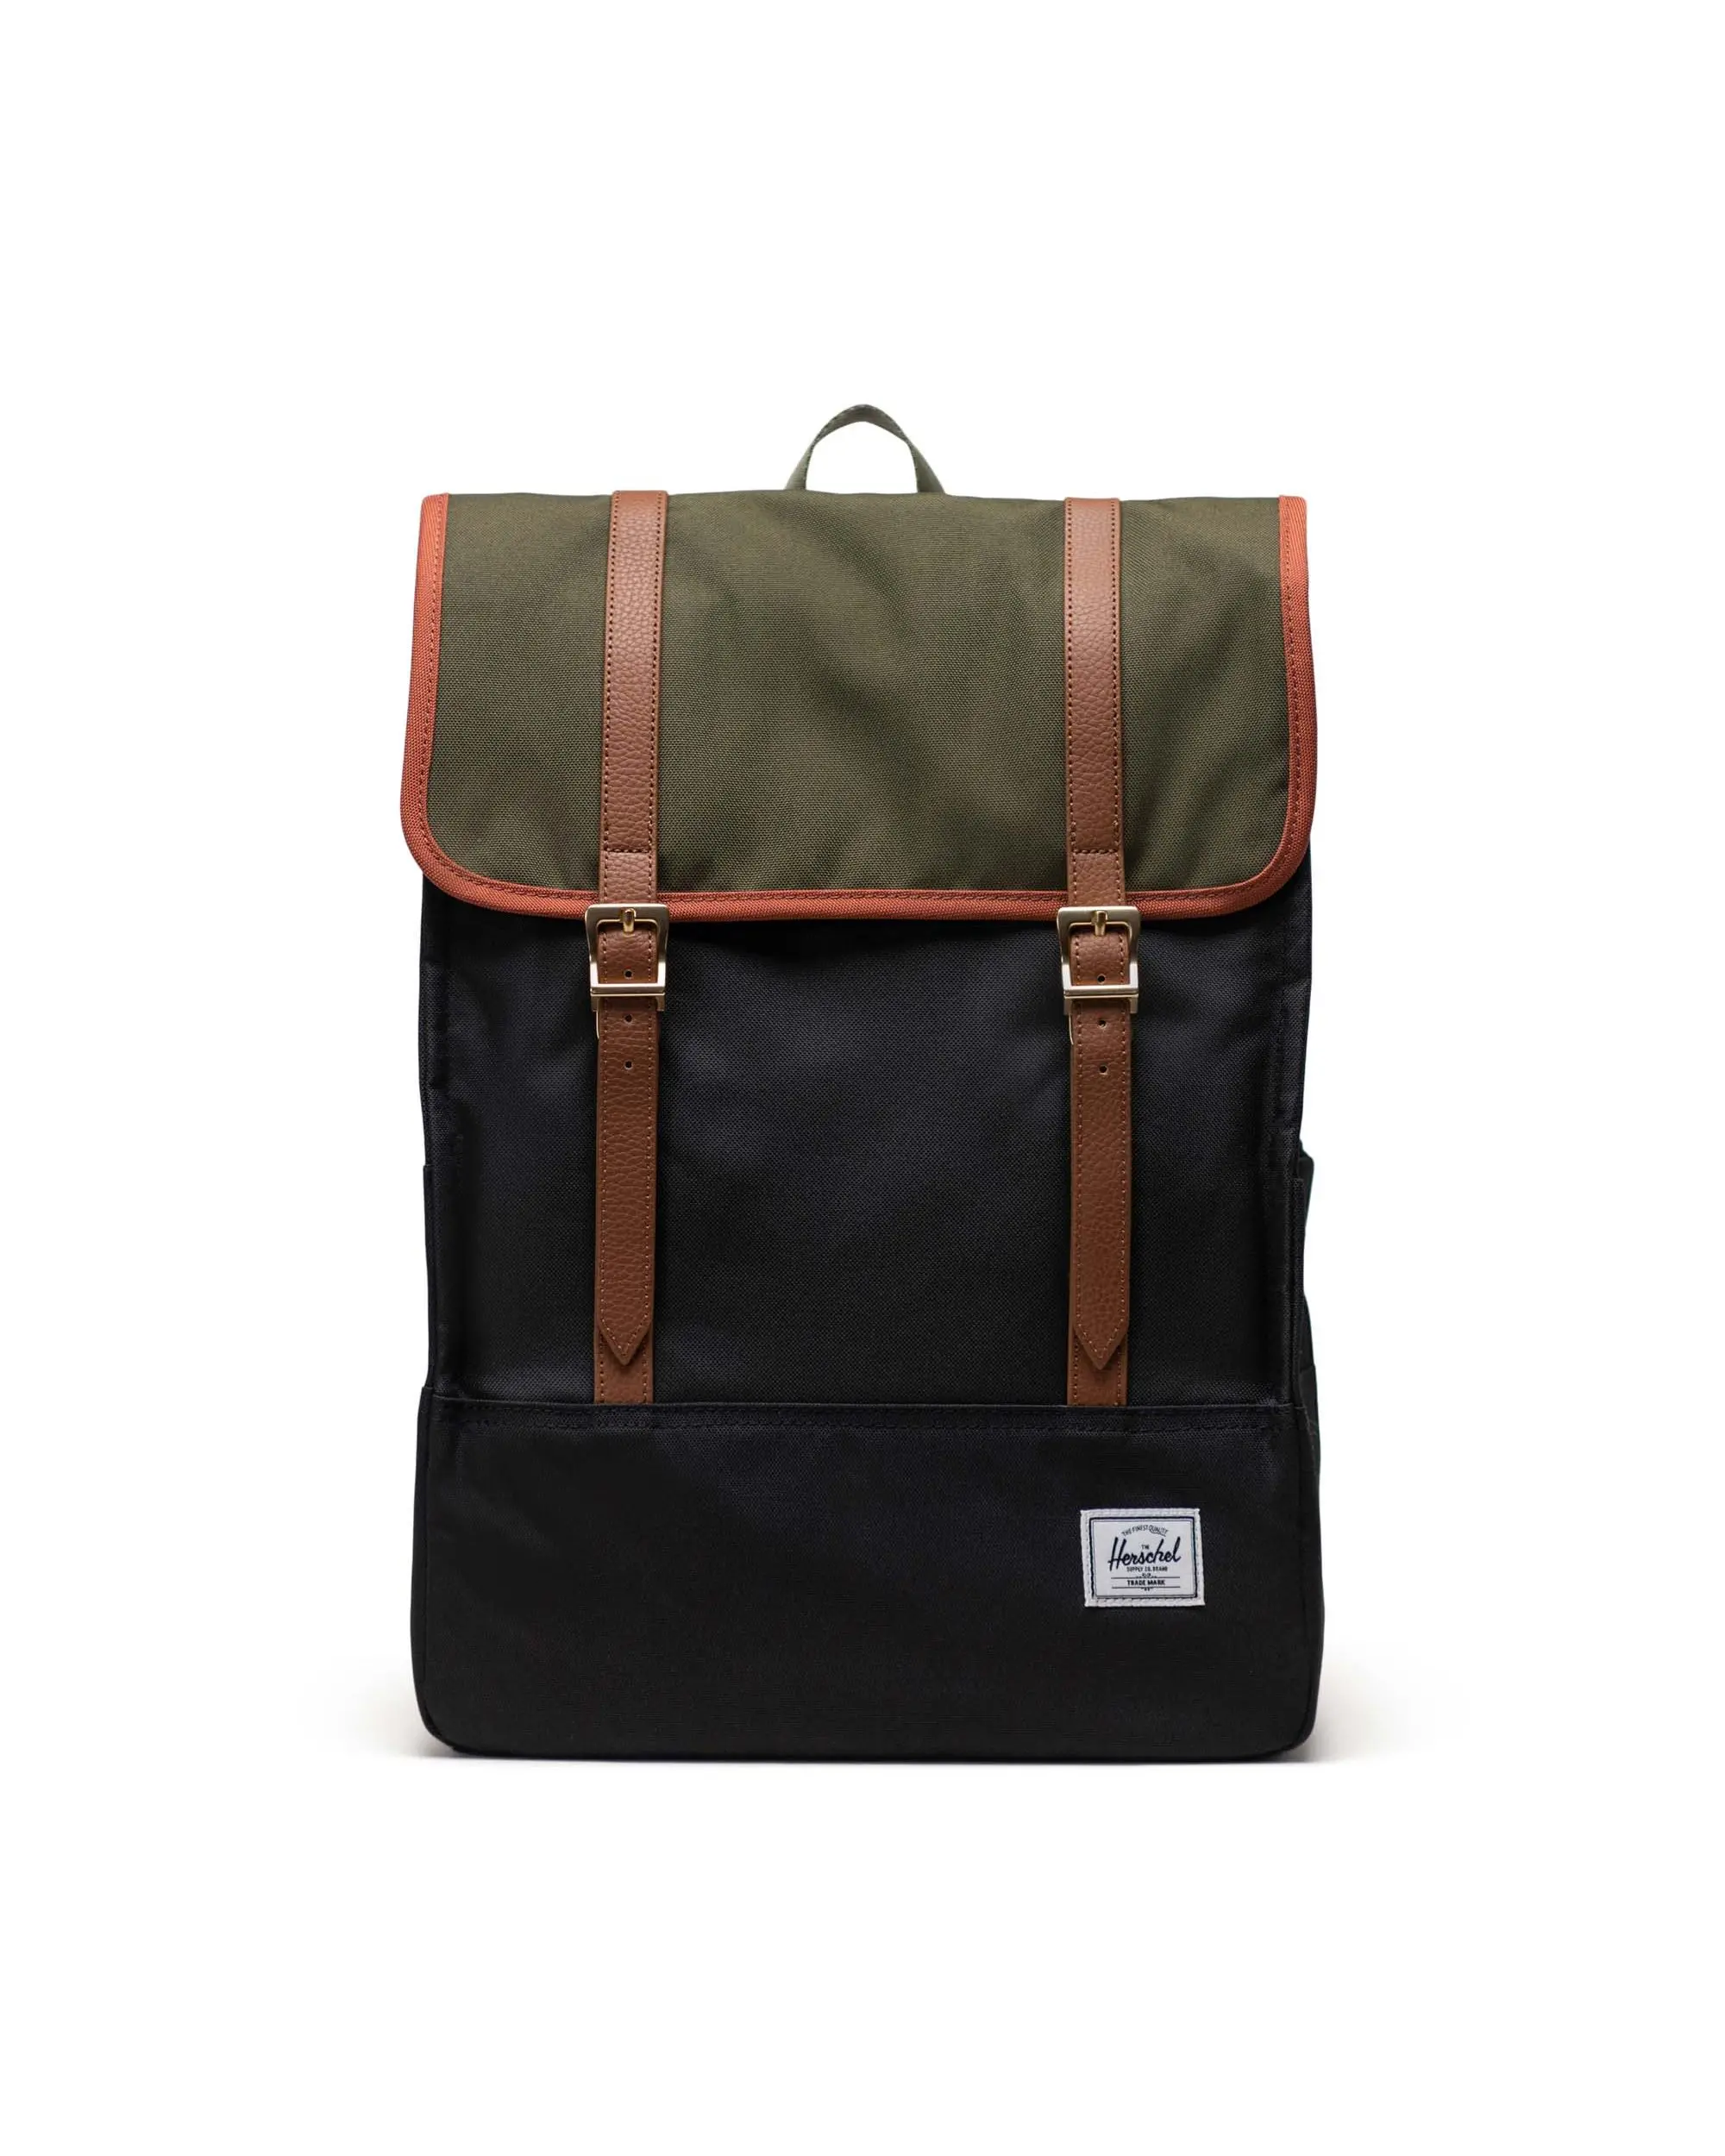 Herschel sac à dos - Survey Backpack - noir et olive